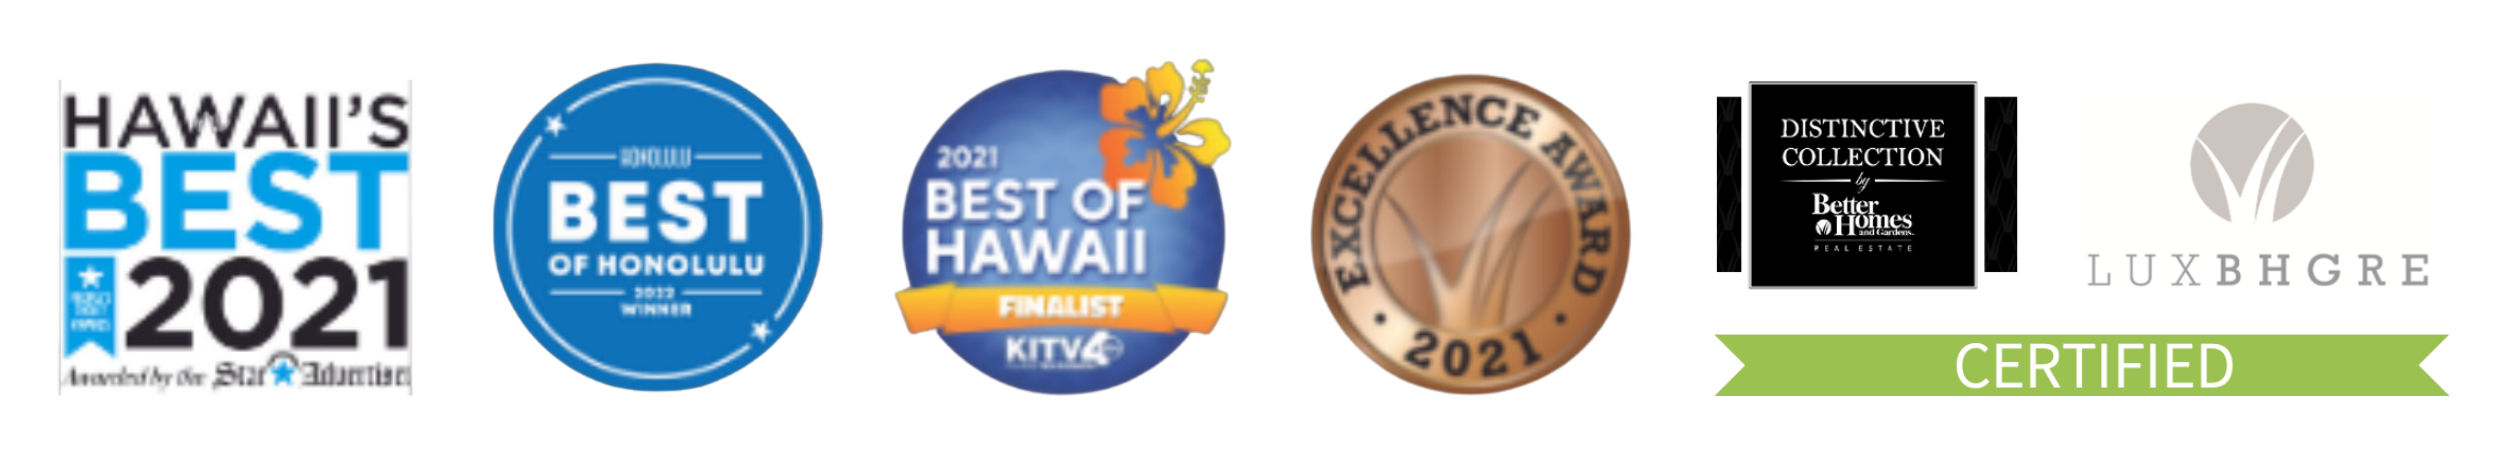 Hawaii's Best - Winner, Best of Honolulu - Finalist, Excellence Award 2021, Luxury Real Estate Certified